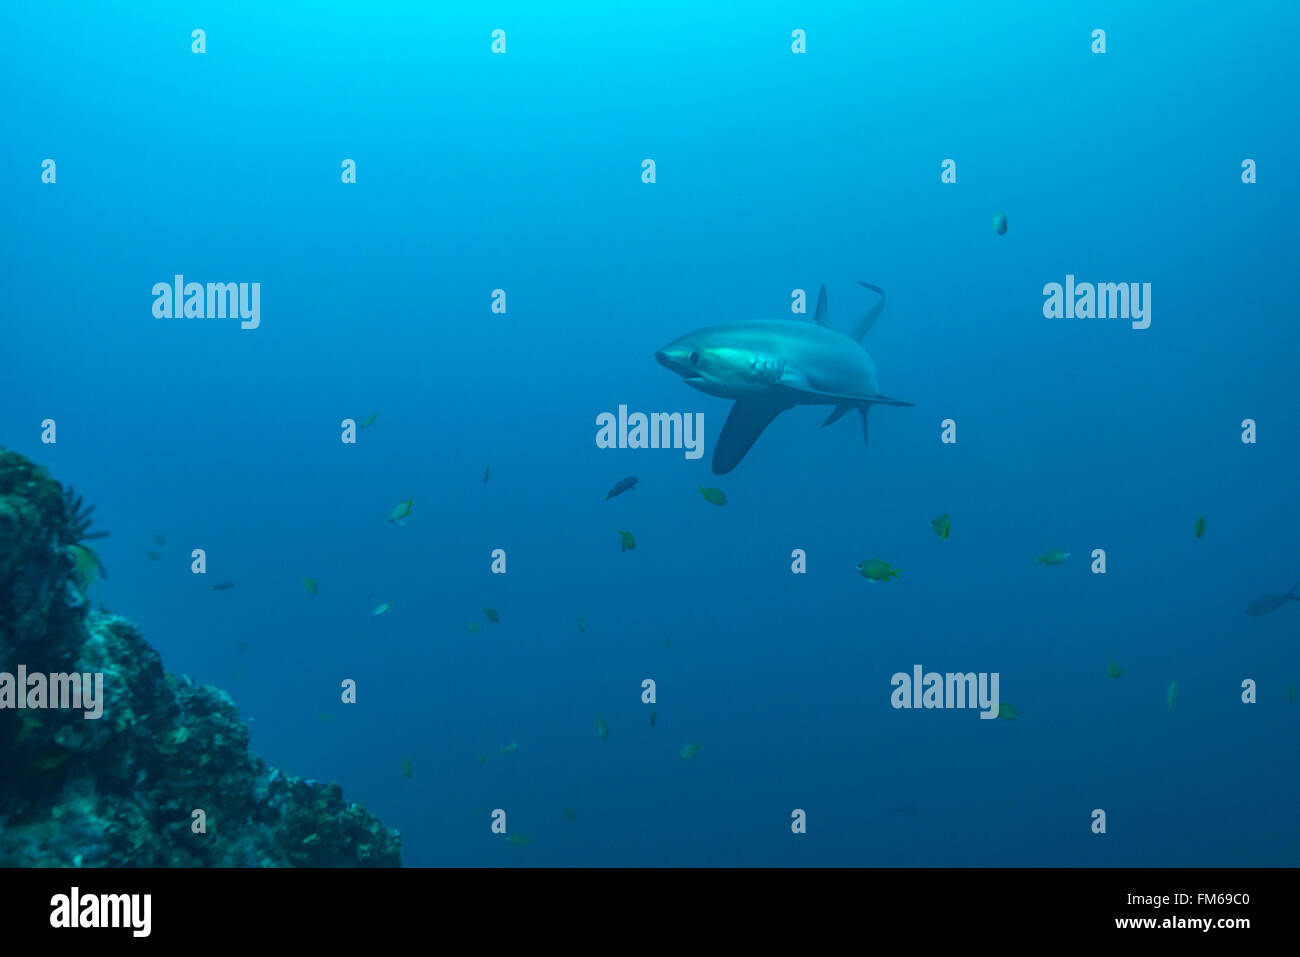 Gemeinsame Thresher Sharks sind pelagische und Leben im tiefen Ozean. Jedoch malapascua bietet eine einzigartige Chance, diese incredibl zu sehen Stockfoto